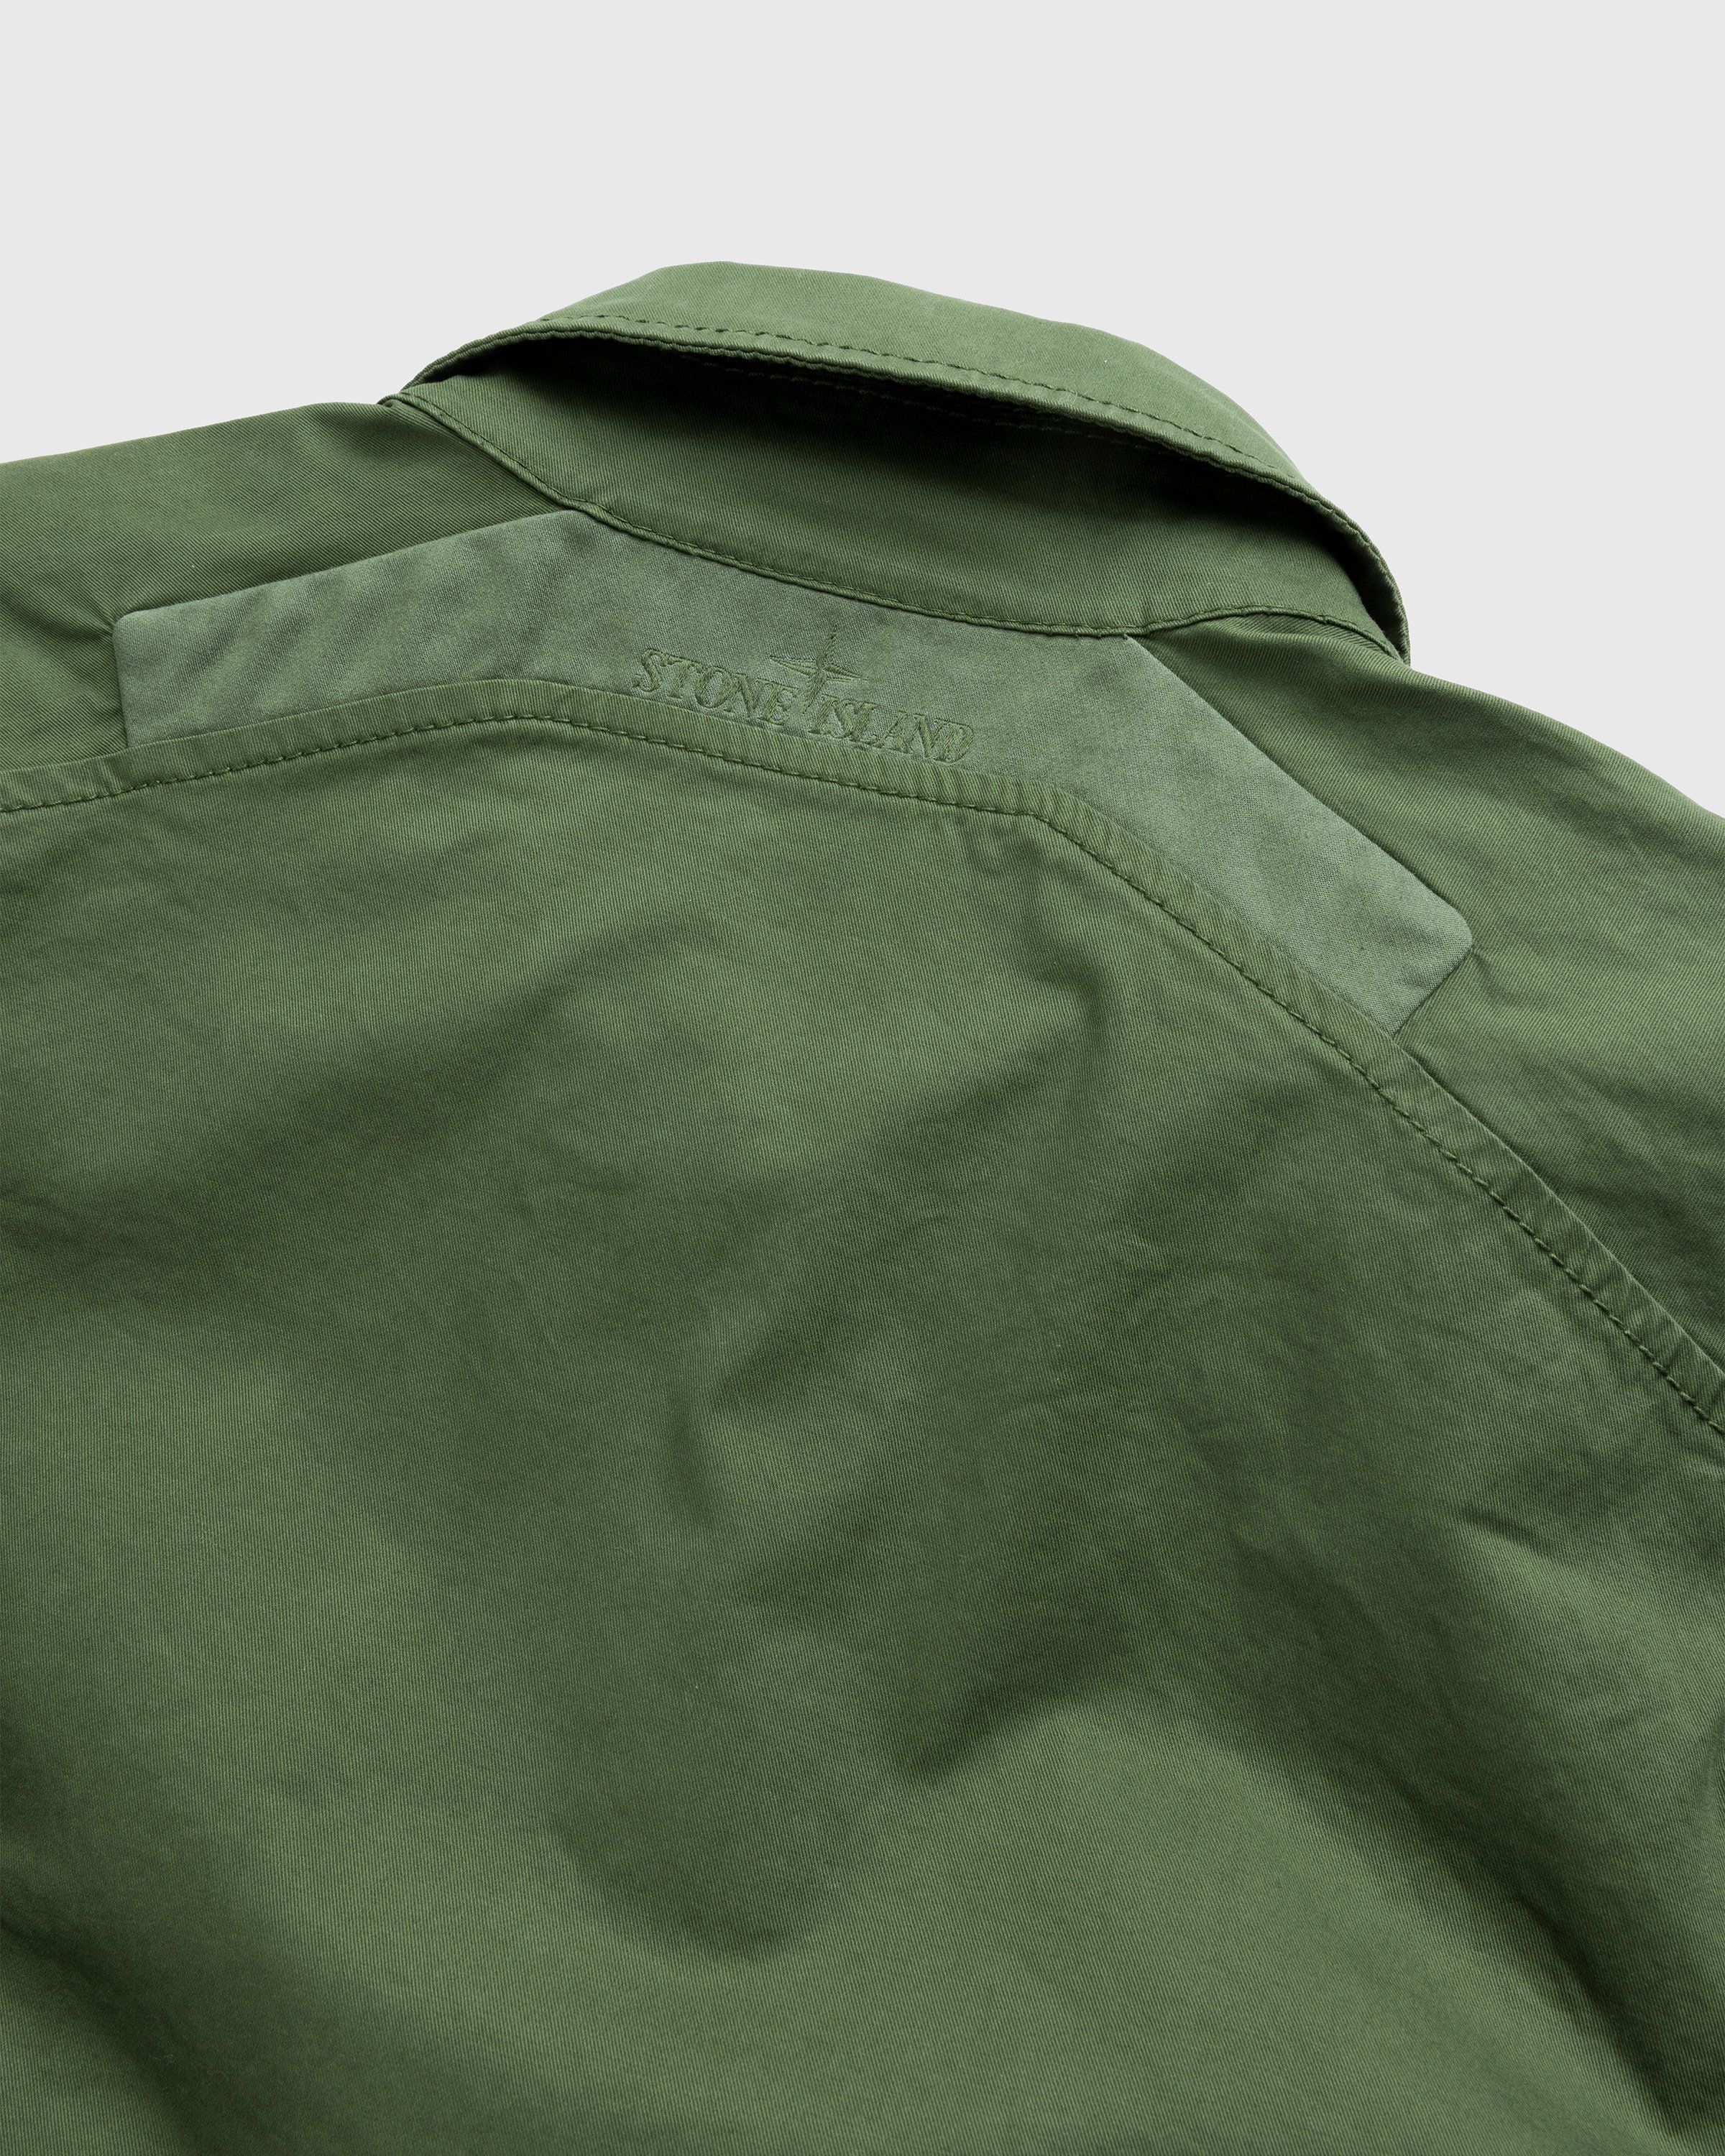 Stone Island - Garment-Dyed Cotton Overshirt Olive - Clothing - Green - Image 4